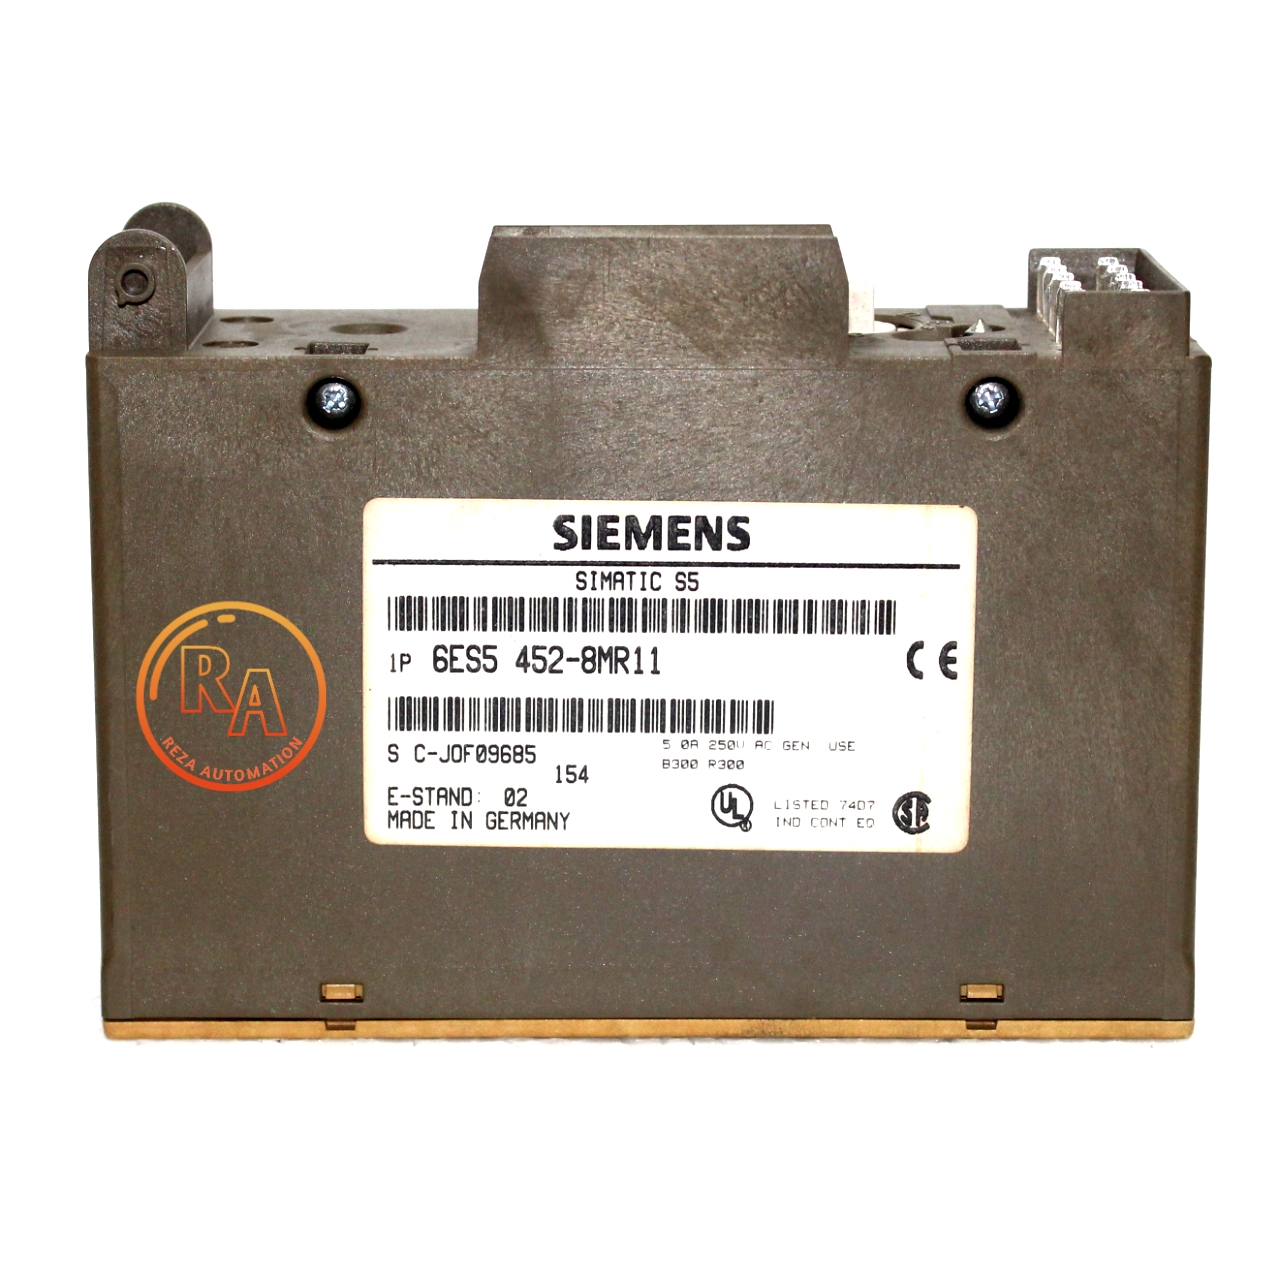 6ES5452-8MR11 Siemens Simatic S5 digital 0utput module